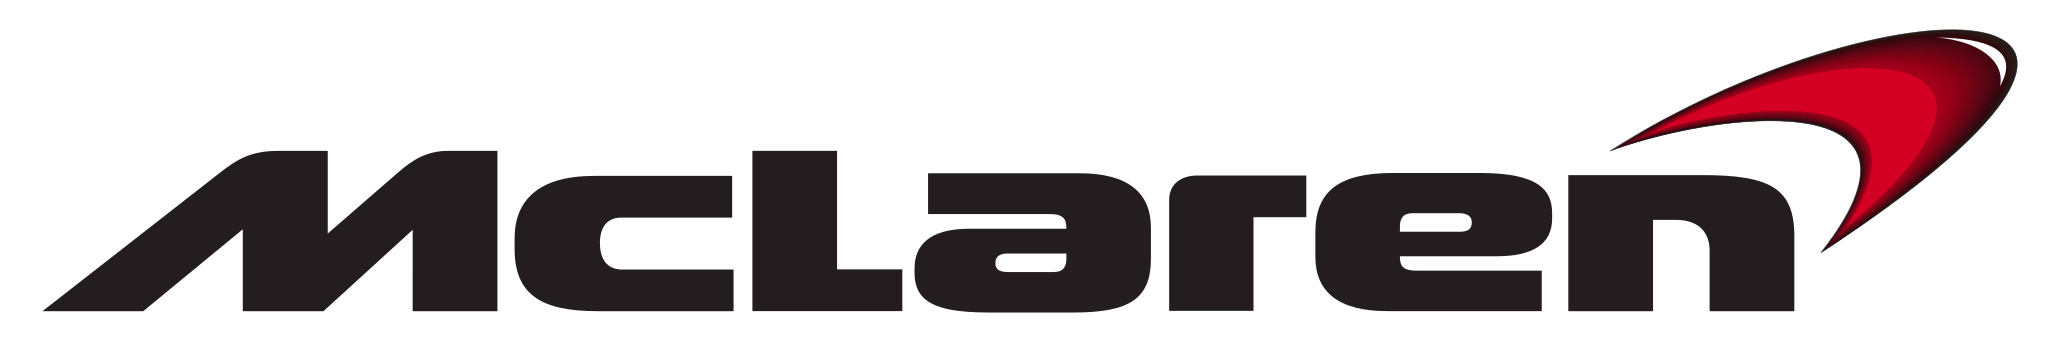 Mclaren logo